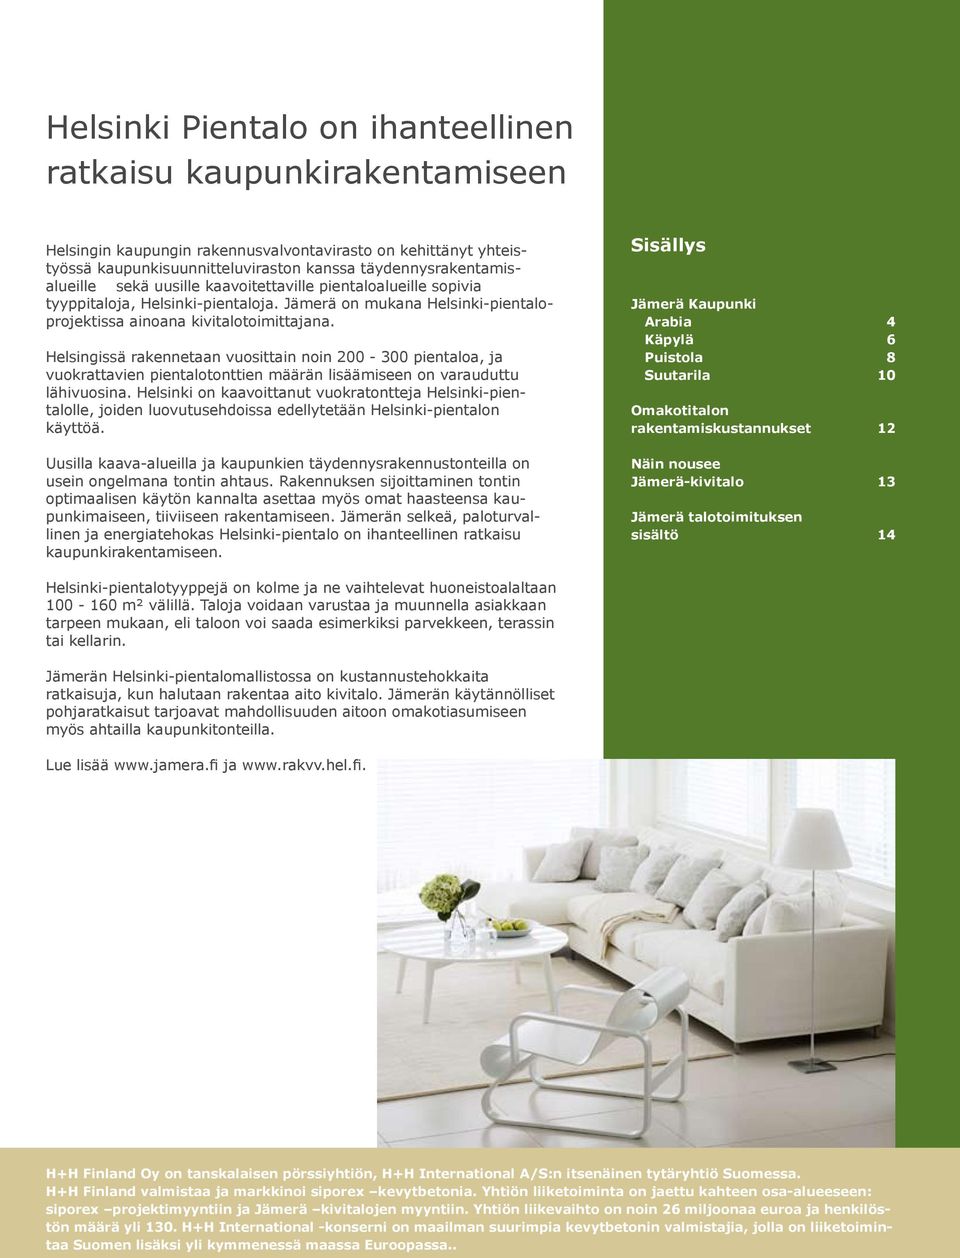 Helsingissä rakennetaan vuosittain noin 200-300 pientaloa, ja vuokrattavien pientalotonttien määrän lisäämiseen on varauduttu lähivuosina.